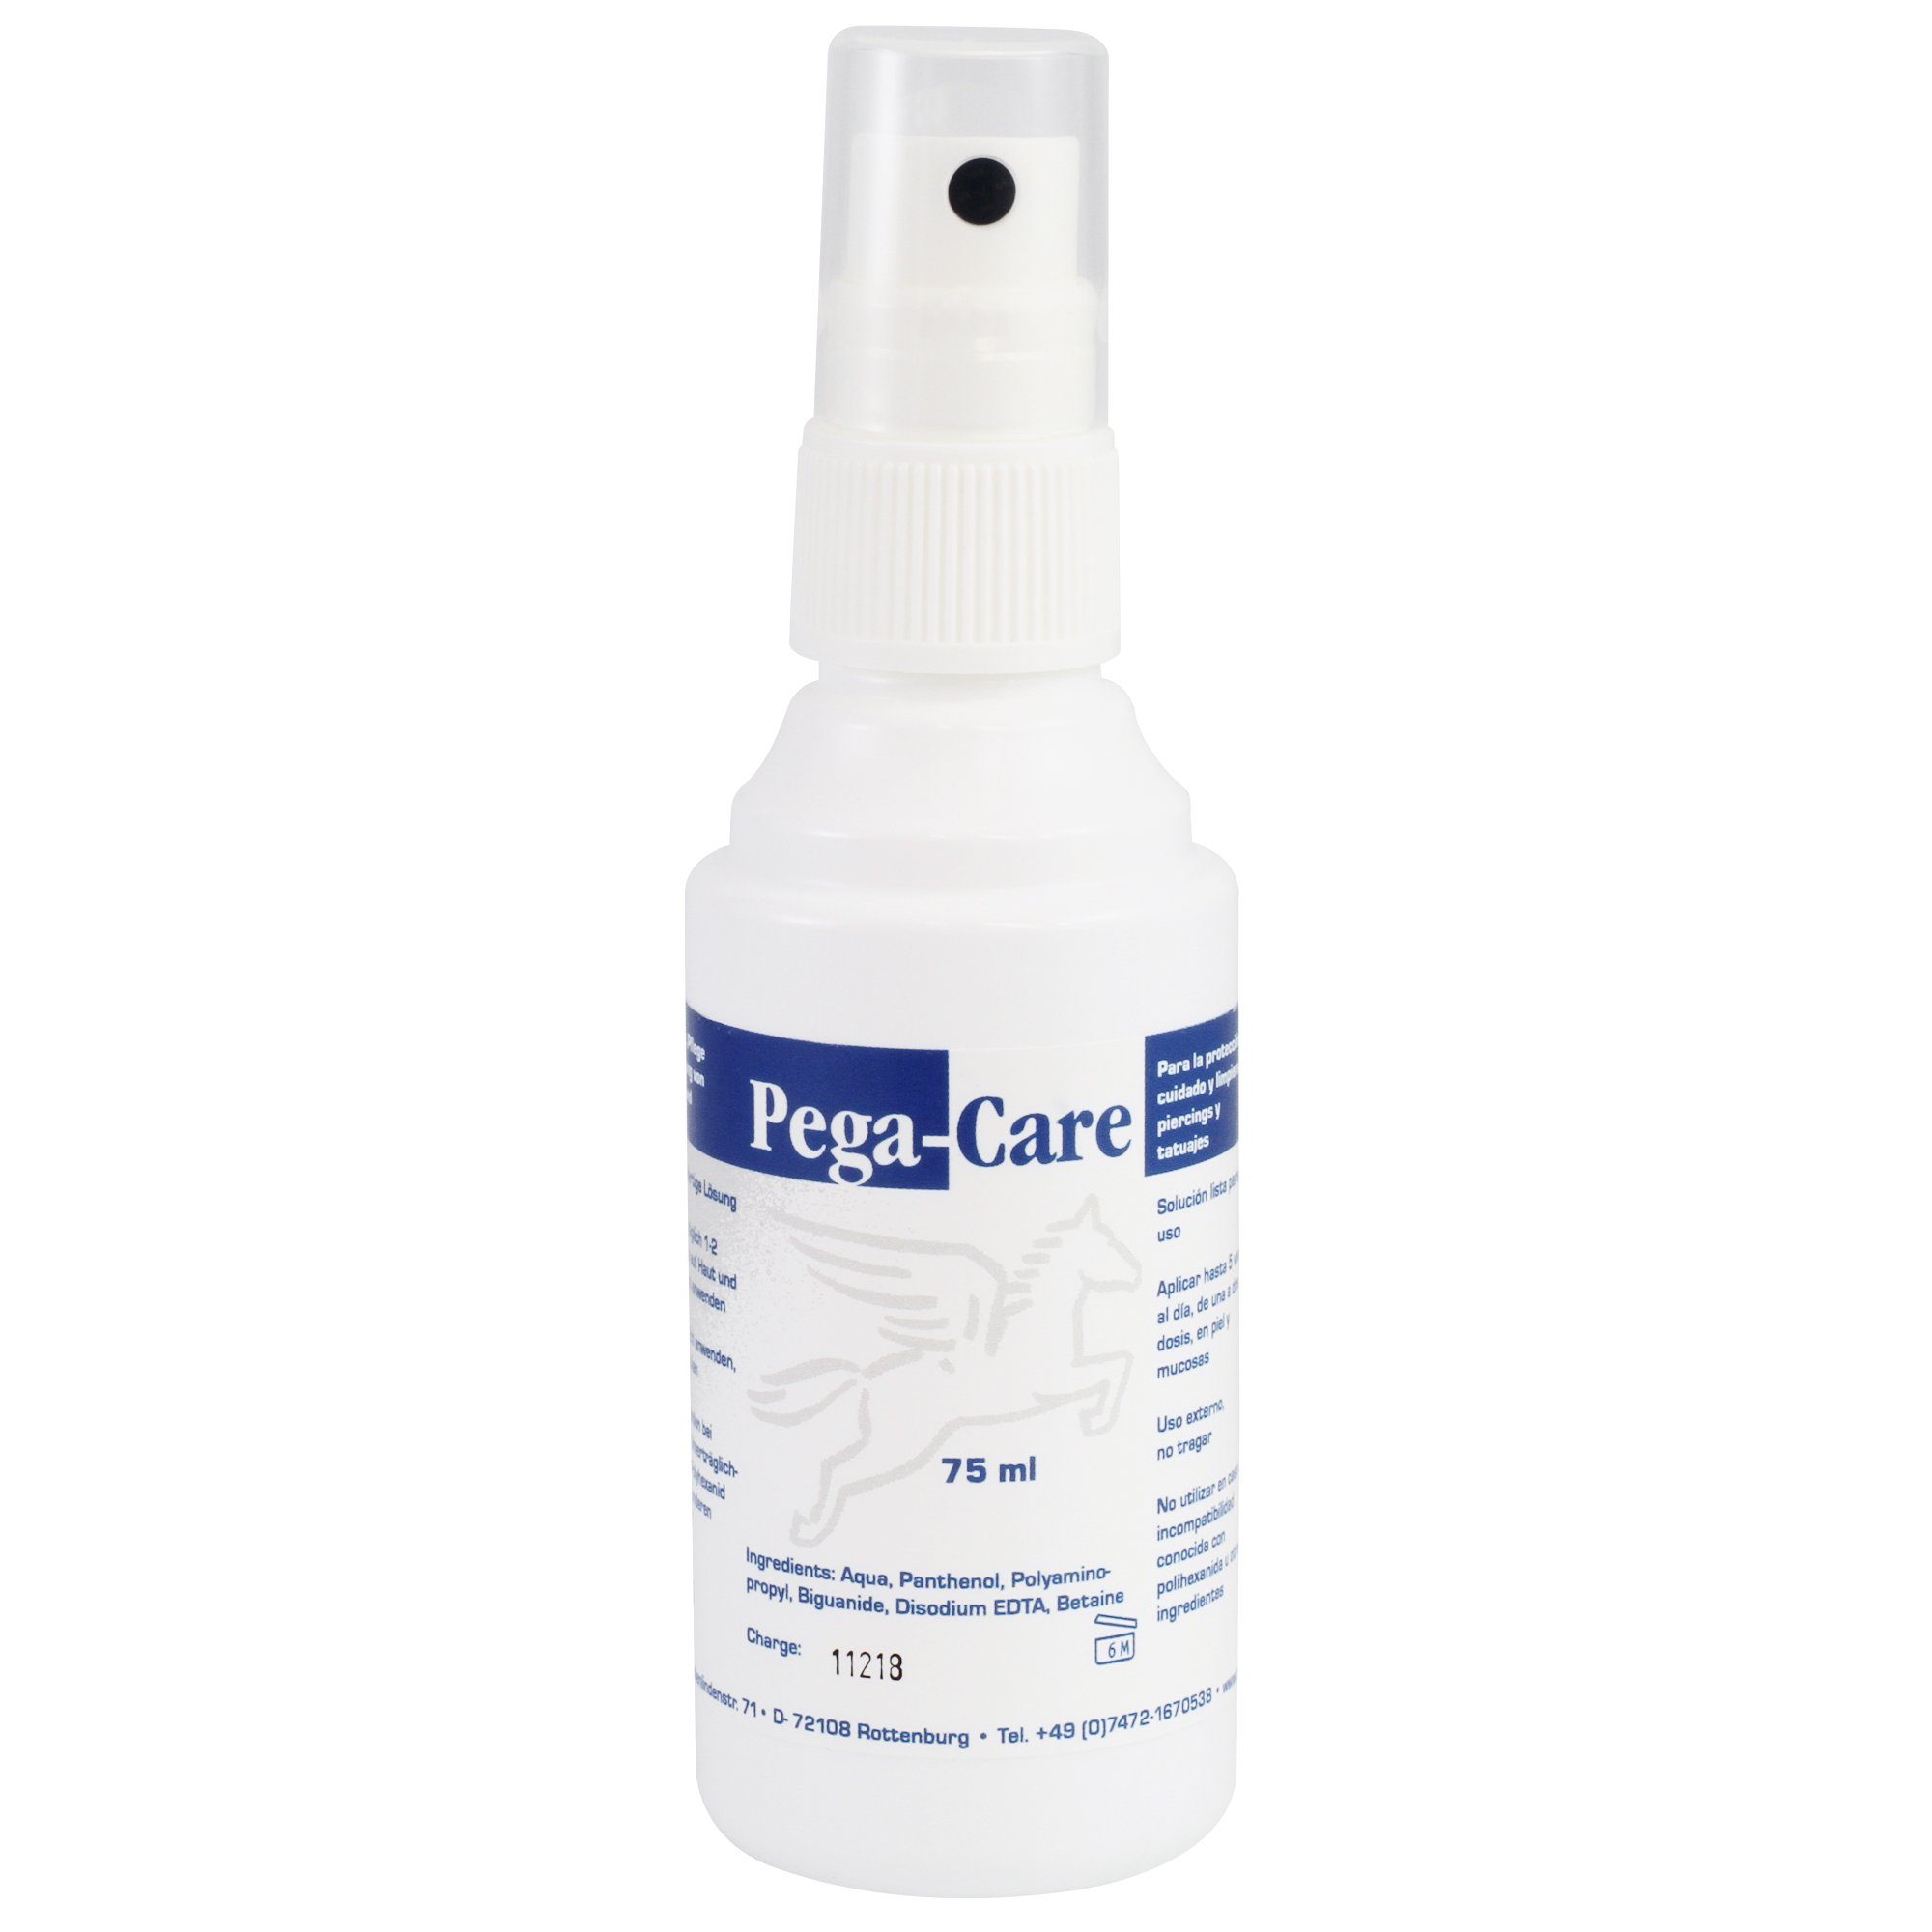 SANISMART Erste-Hilfe-Set Spray, PegaCare 75 ml mit Panthenol  Reinigungsspray für Piercings und Tattoos